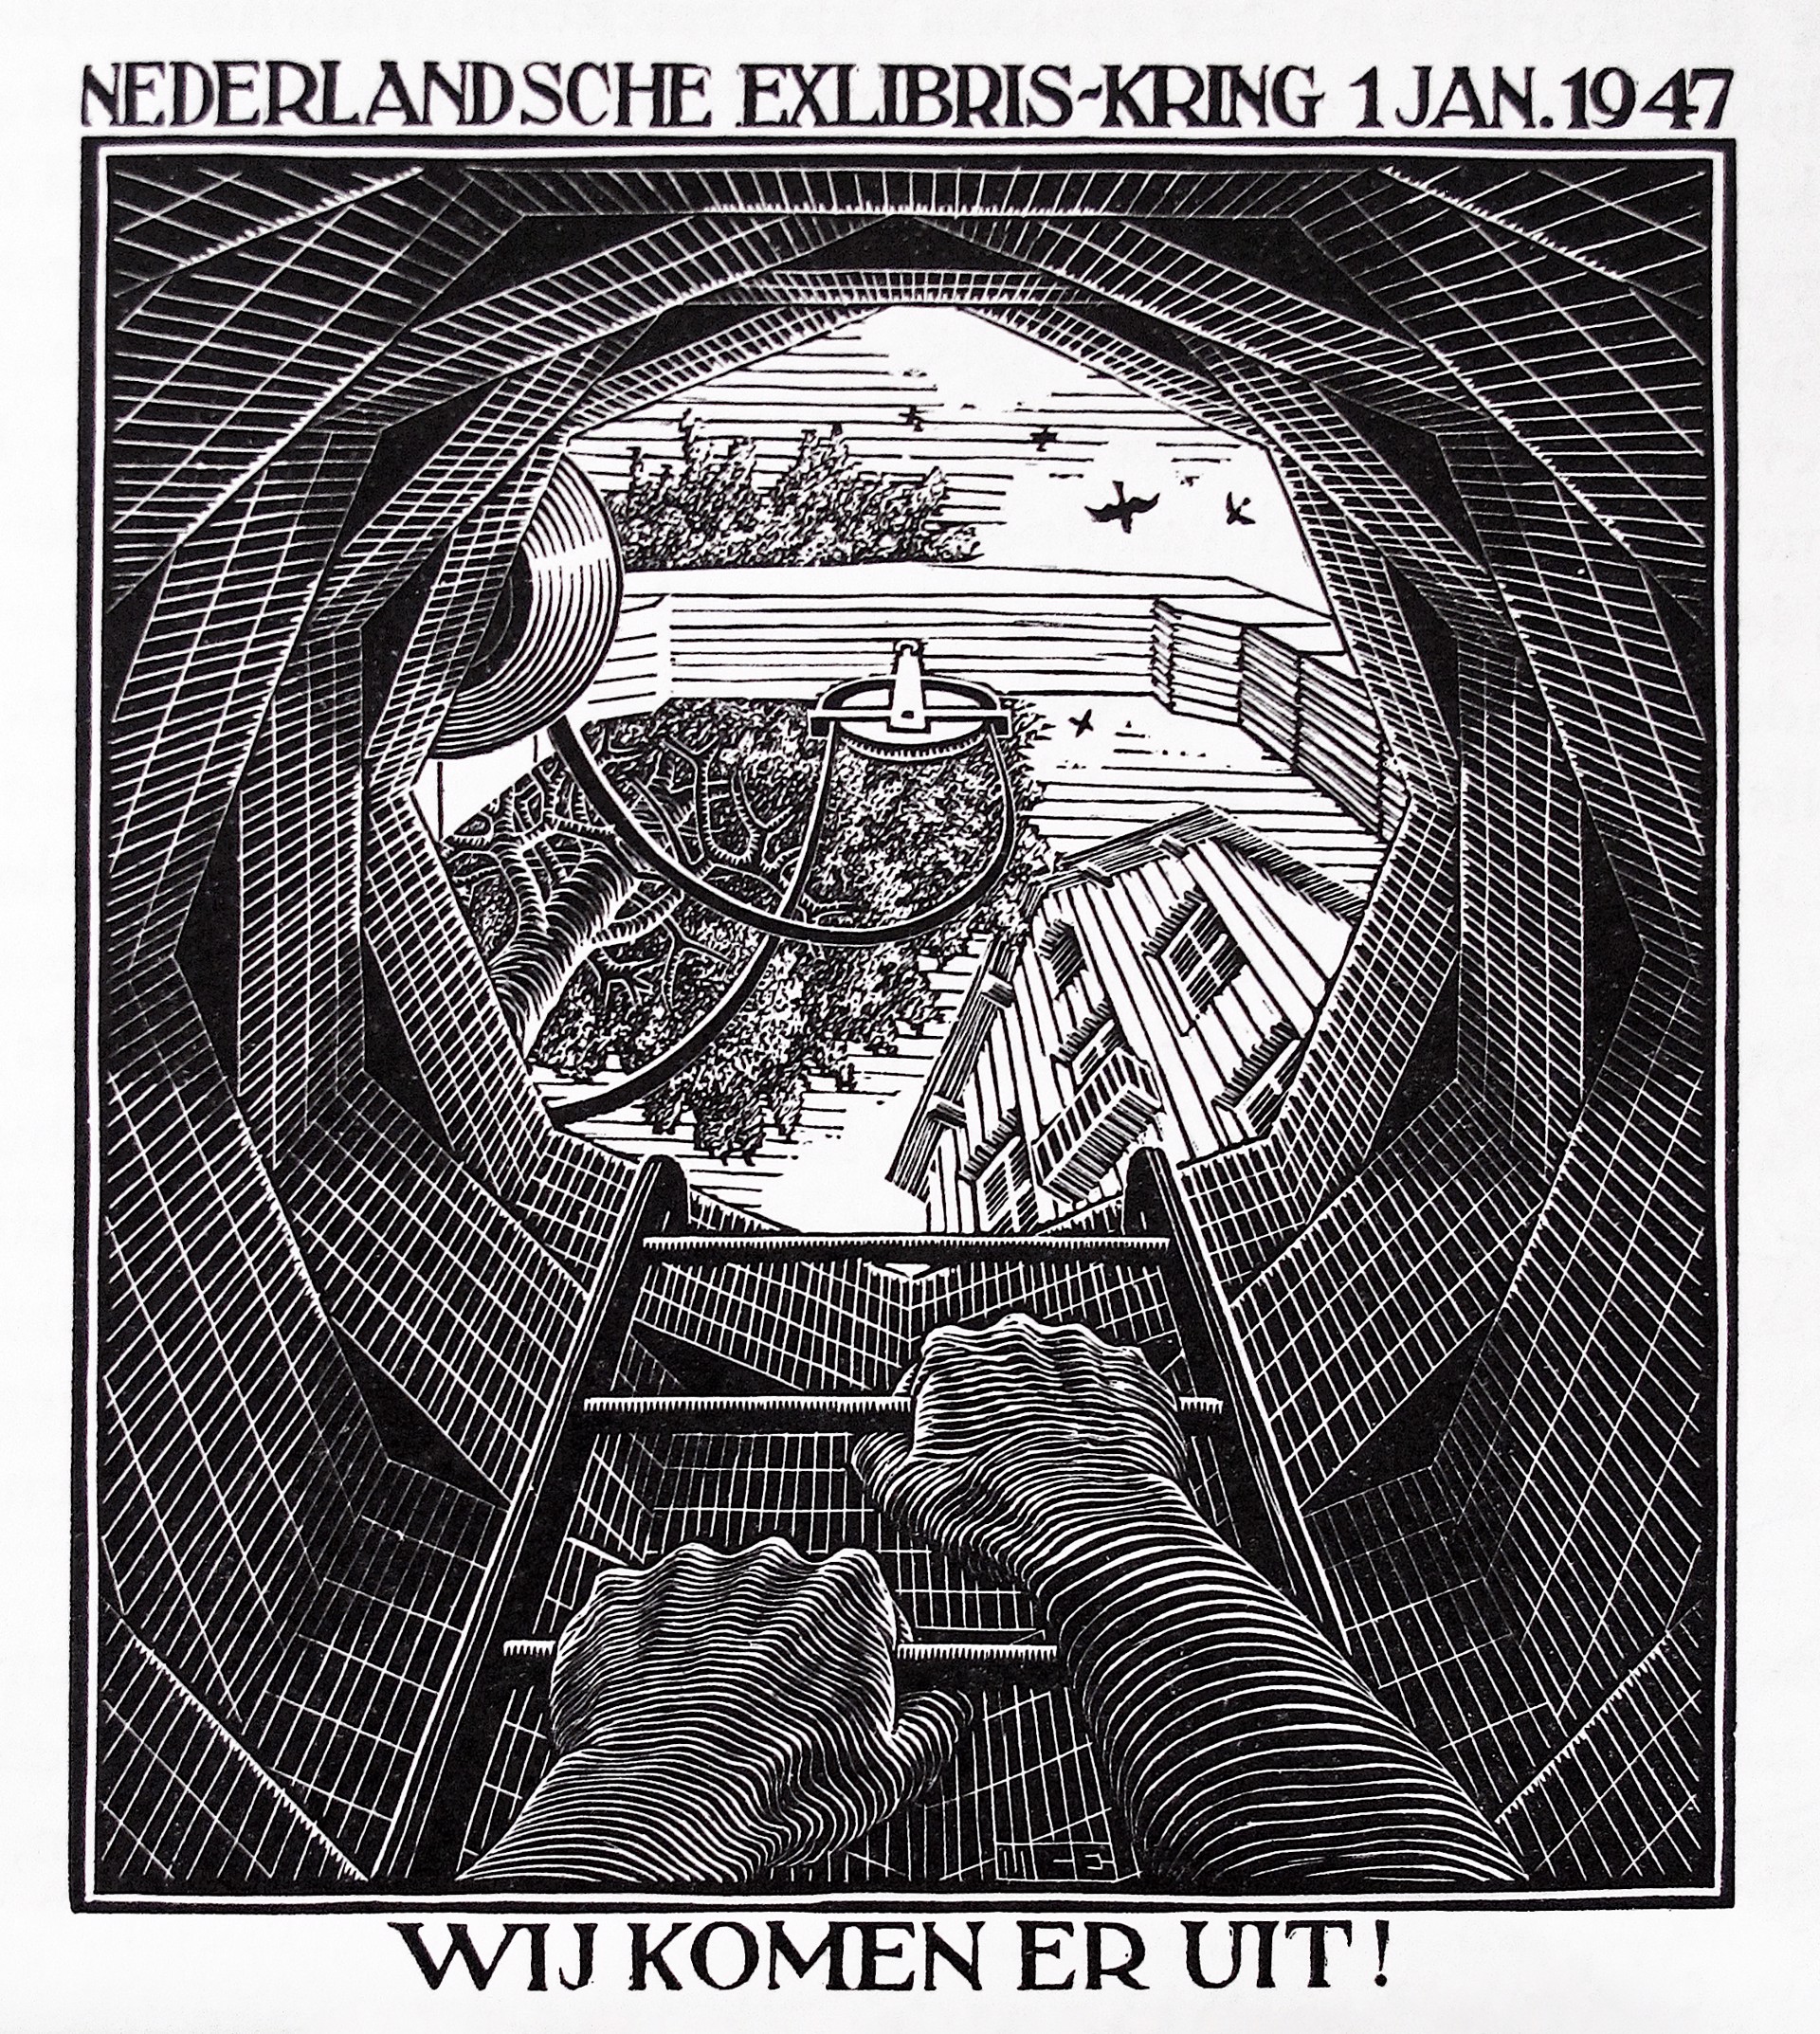 The Well by M.C. Escher